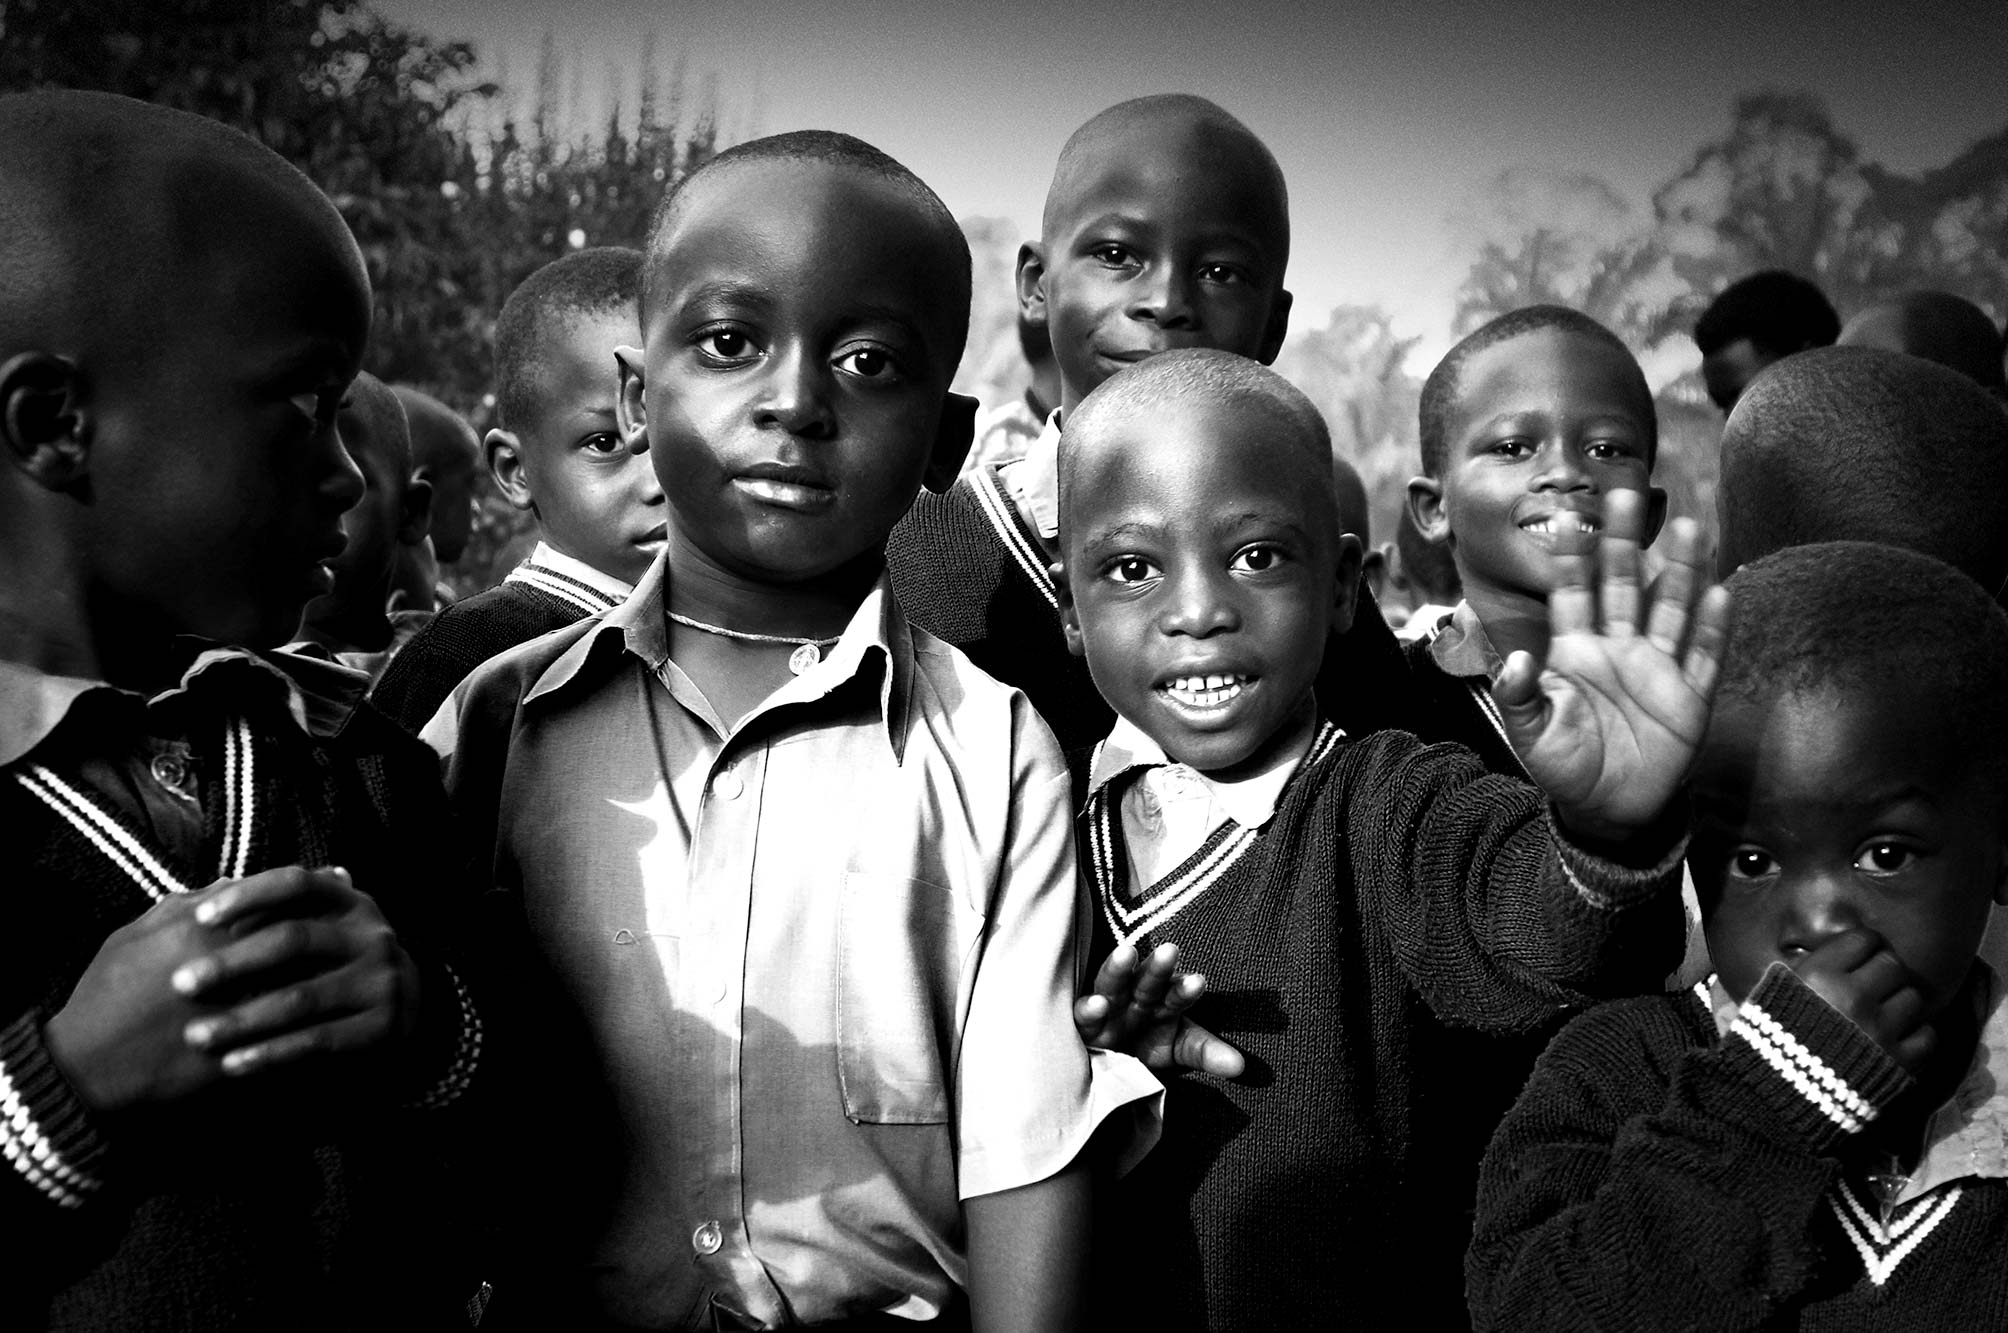 Uganda children at school